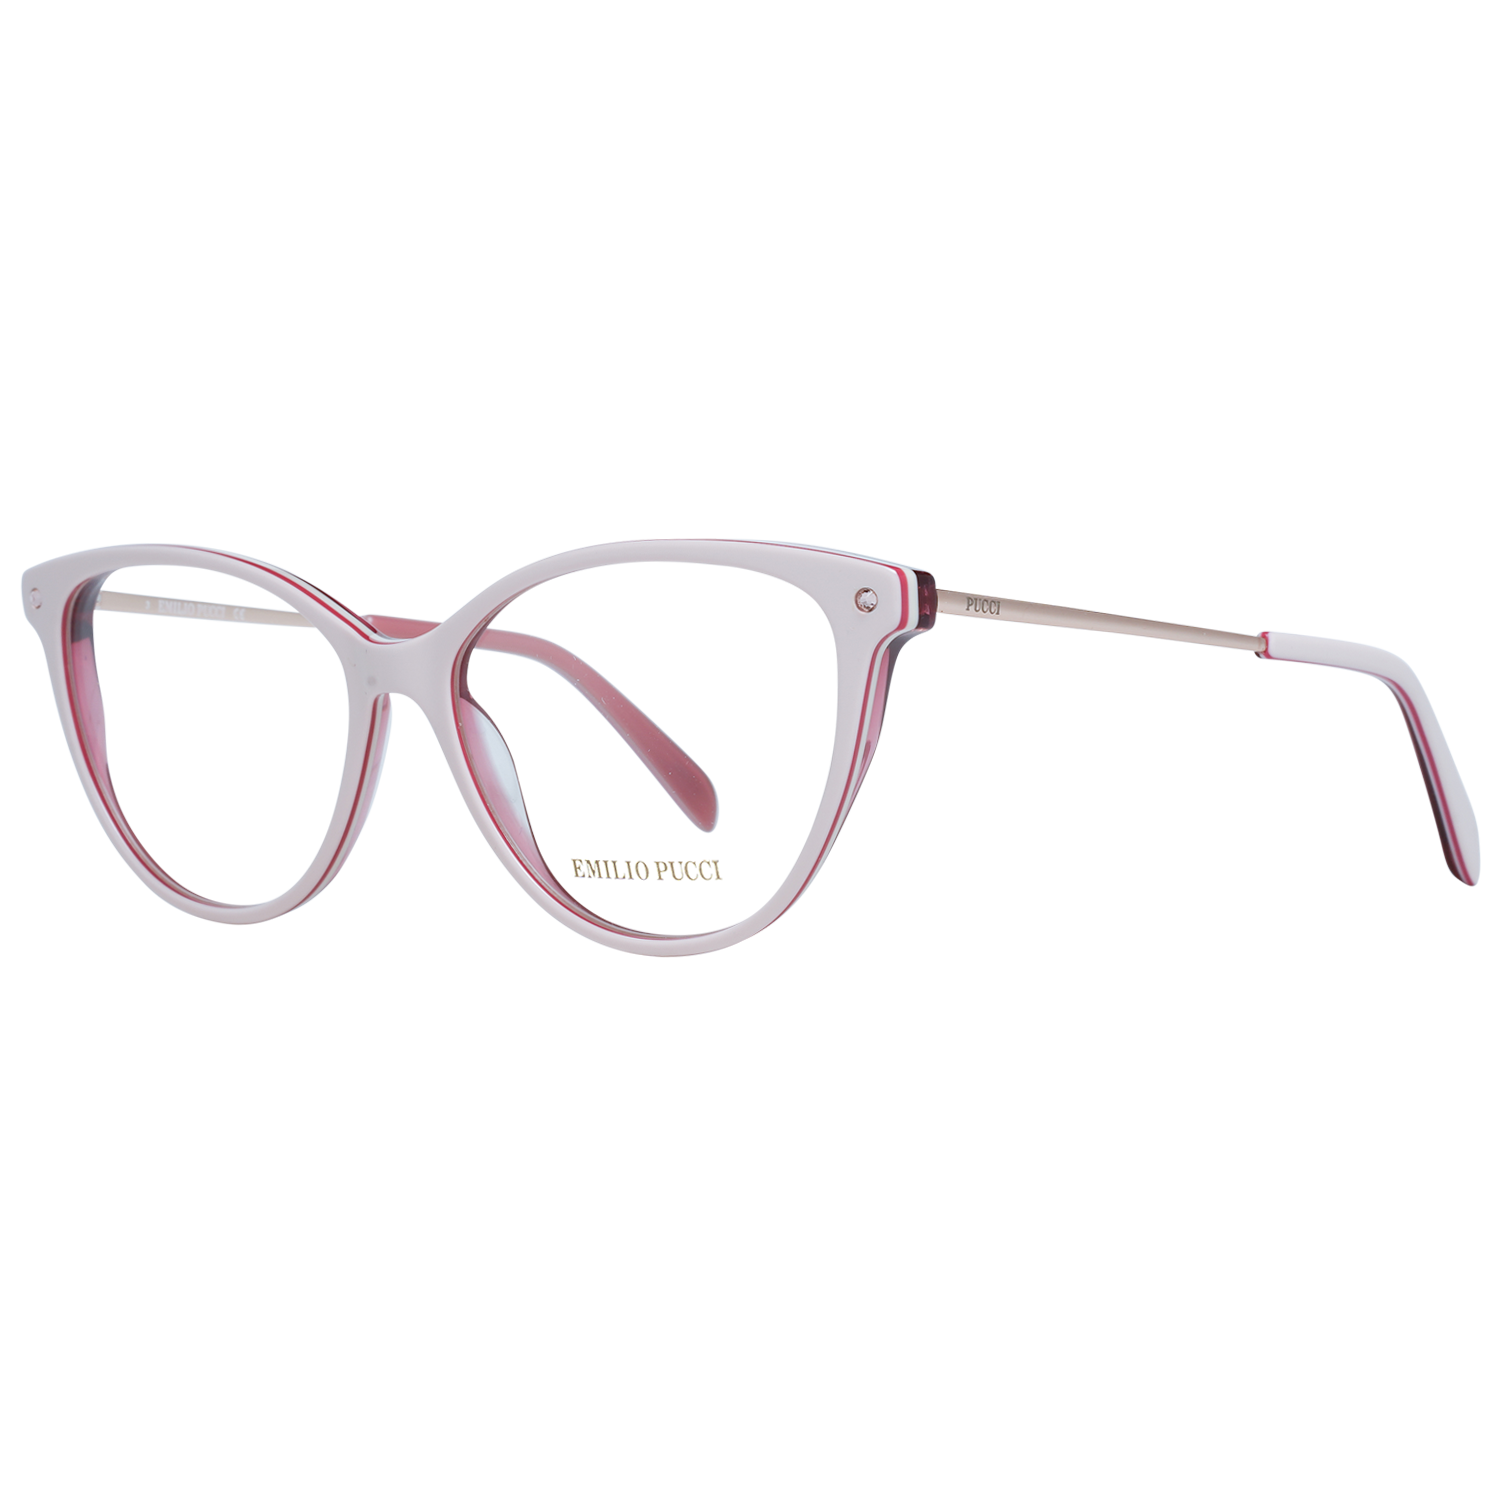 Emilio Pucci Frames Emilio Pucci Optical Frame EP5119 024 55 Eyeglasses Eyewear UK USA Australia 